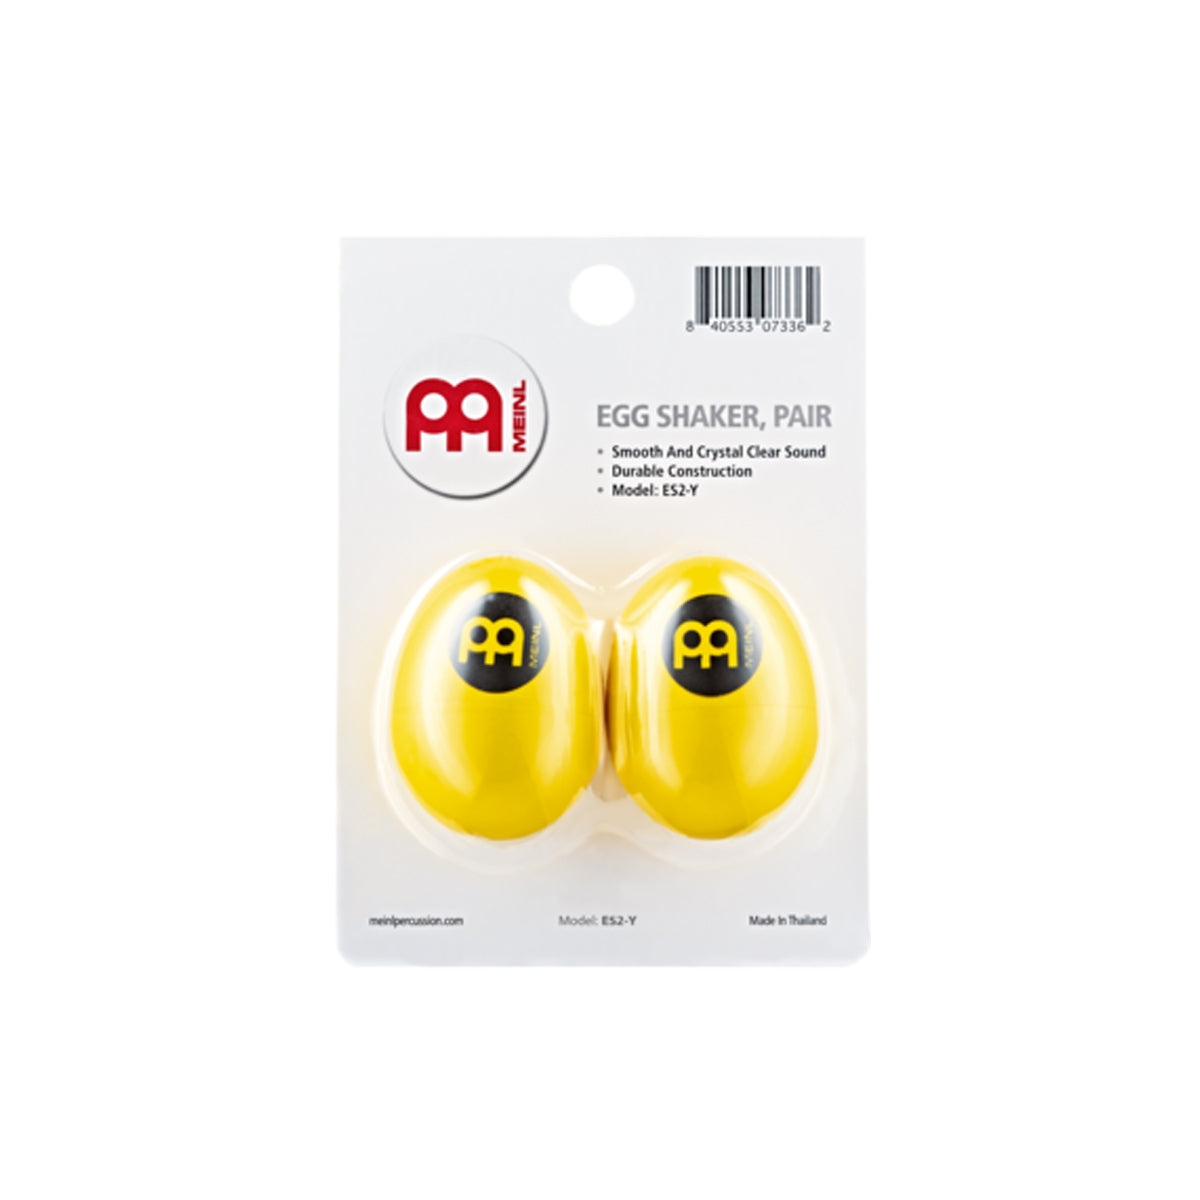 Meinl ES2-Y Egg Shaker Pair Yellow